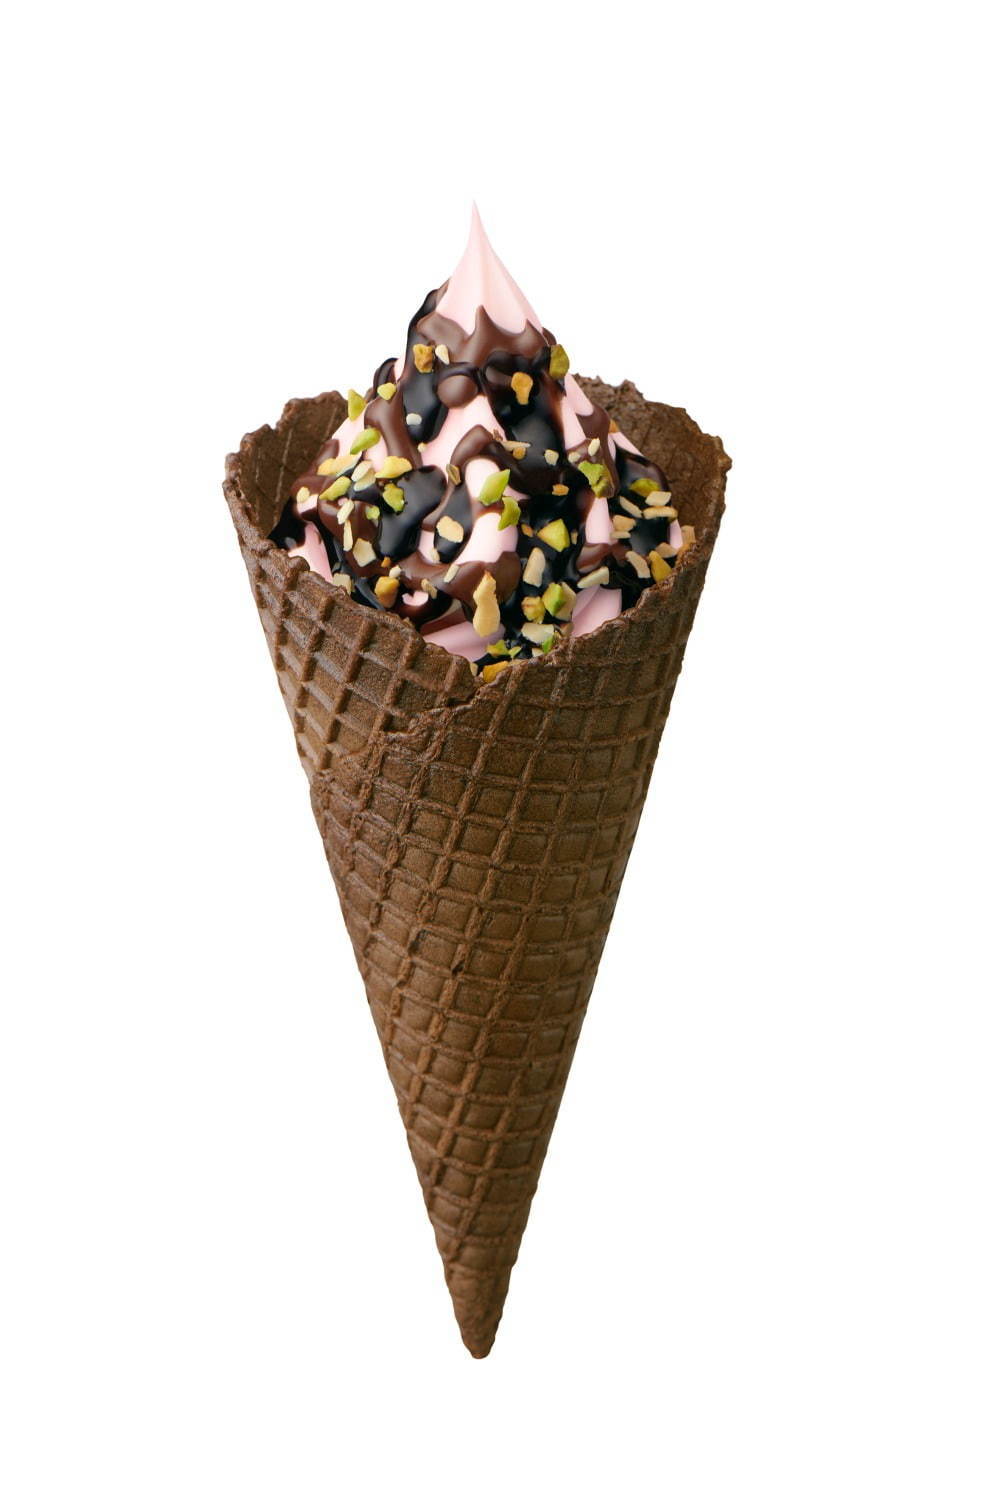 ミニストップの新作ソフトクリーム ショコラいちごソフト 苺みるくソフト 濃厚チョコソース ファッションプレス